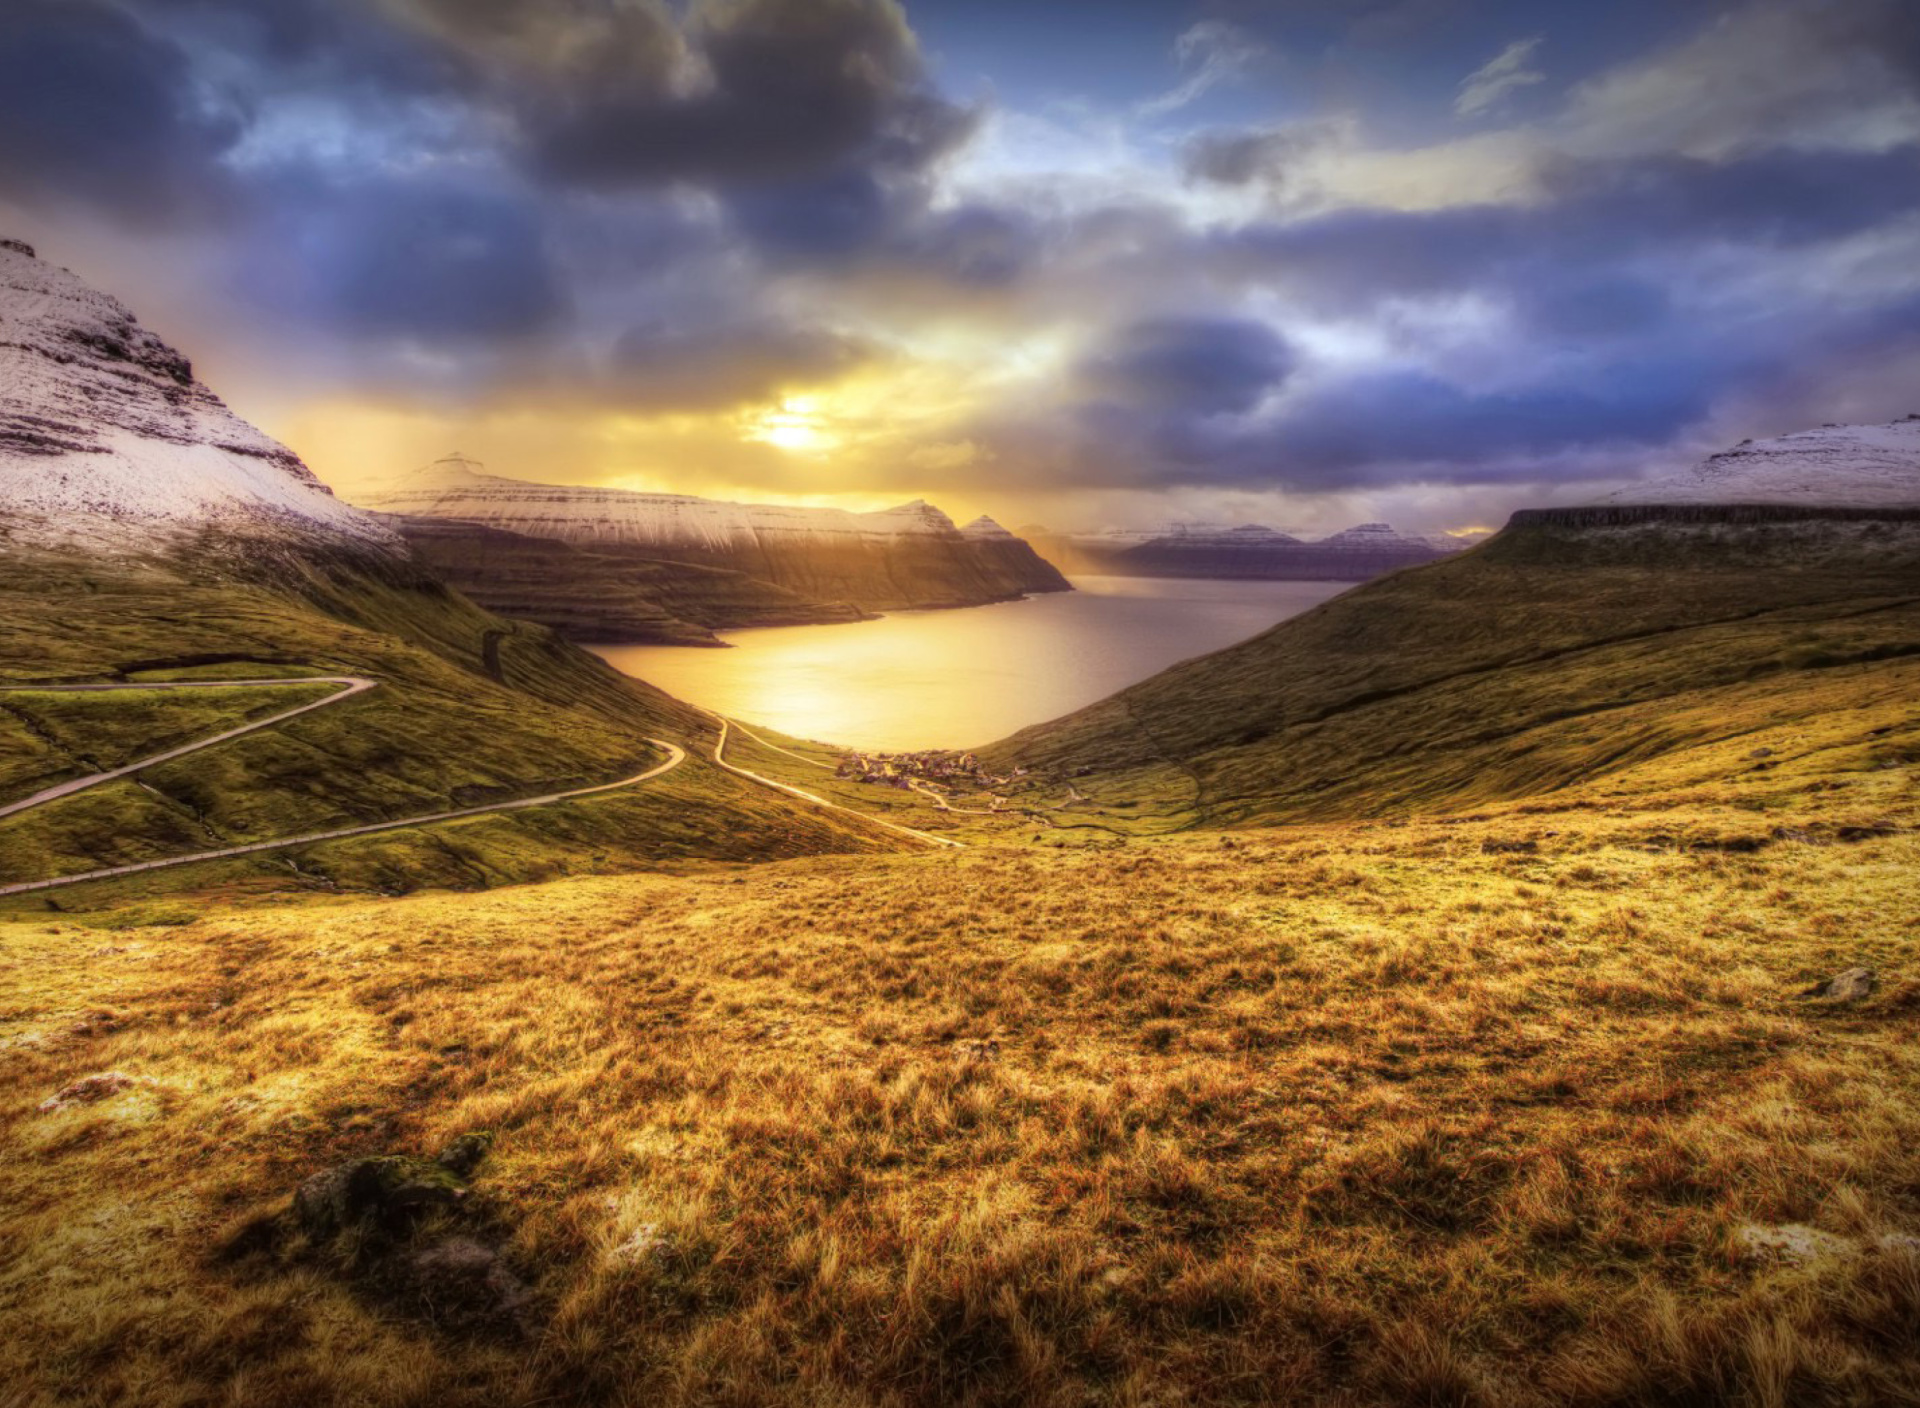 Sfondi Faroe Islands Landscape 1920x1408